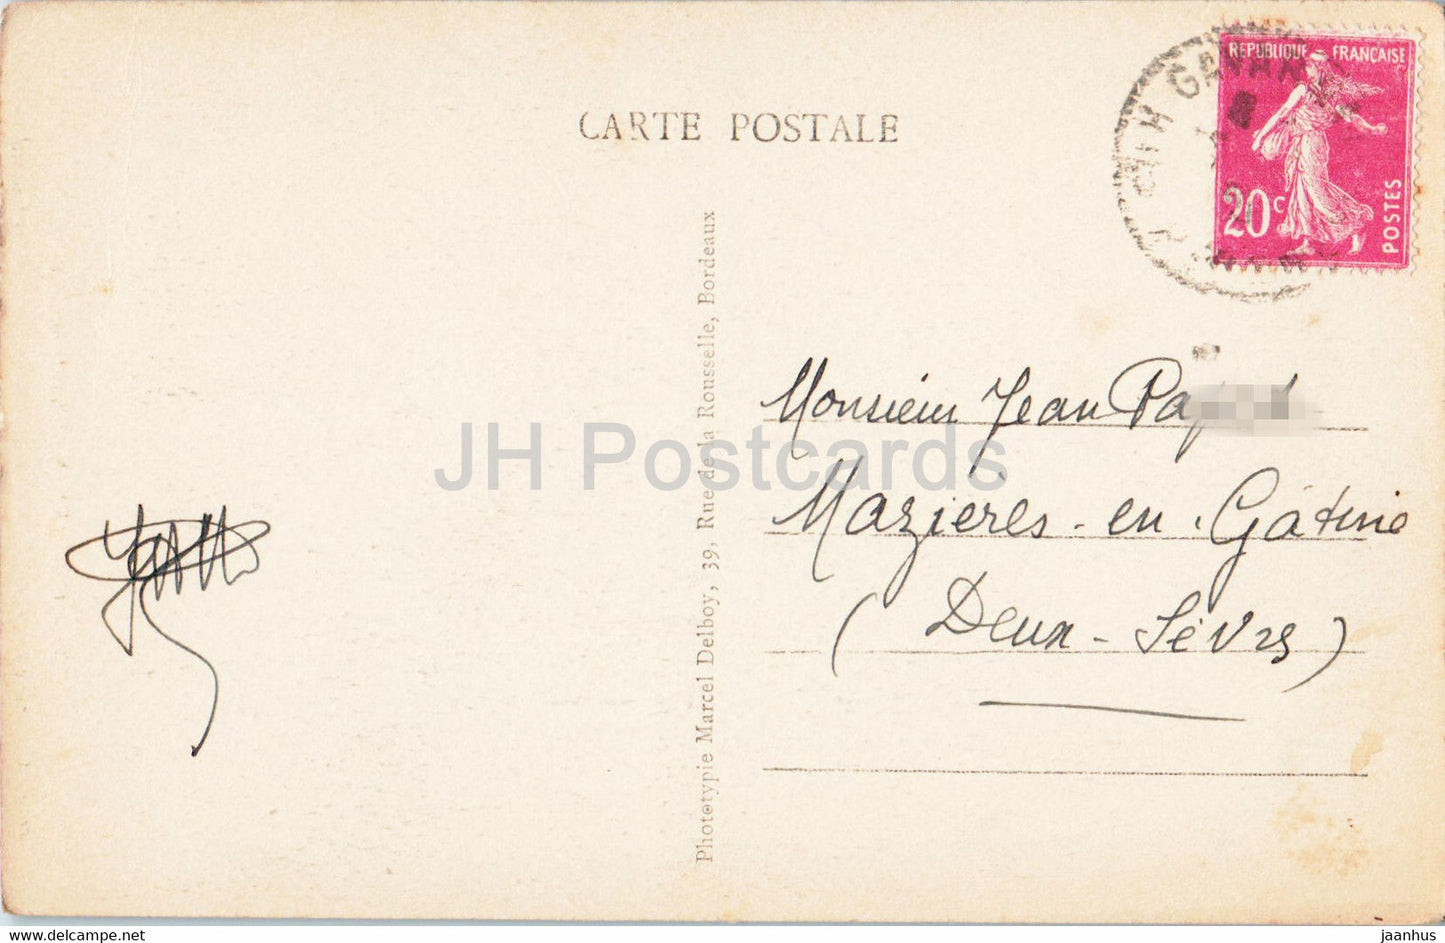 Gavarnie - La Grande Cascade du Cirque - Les Petites Cascades - 19 - carte postale ancienne - France - occasion